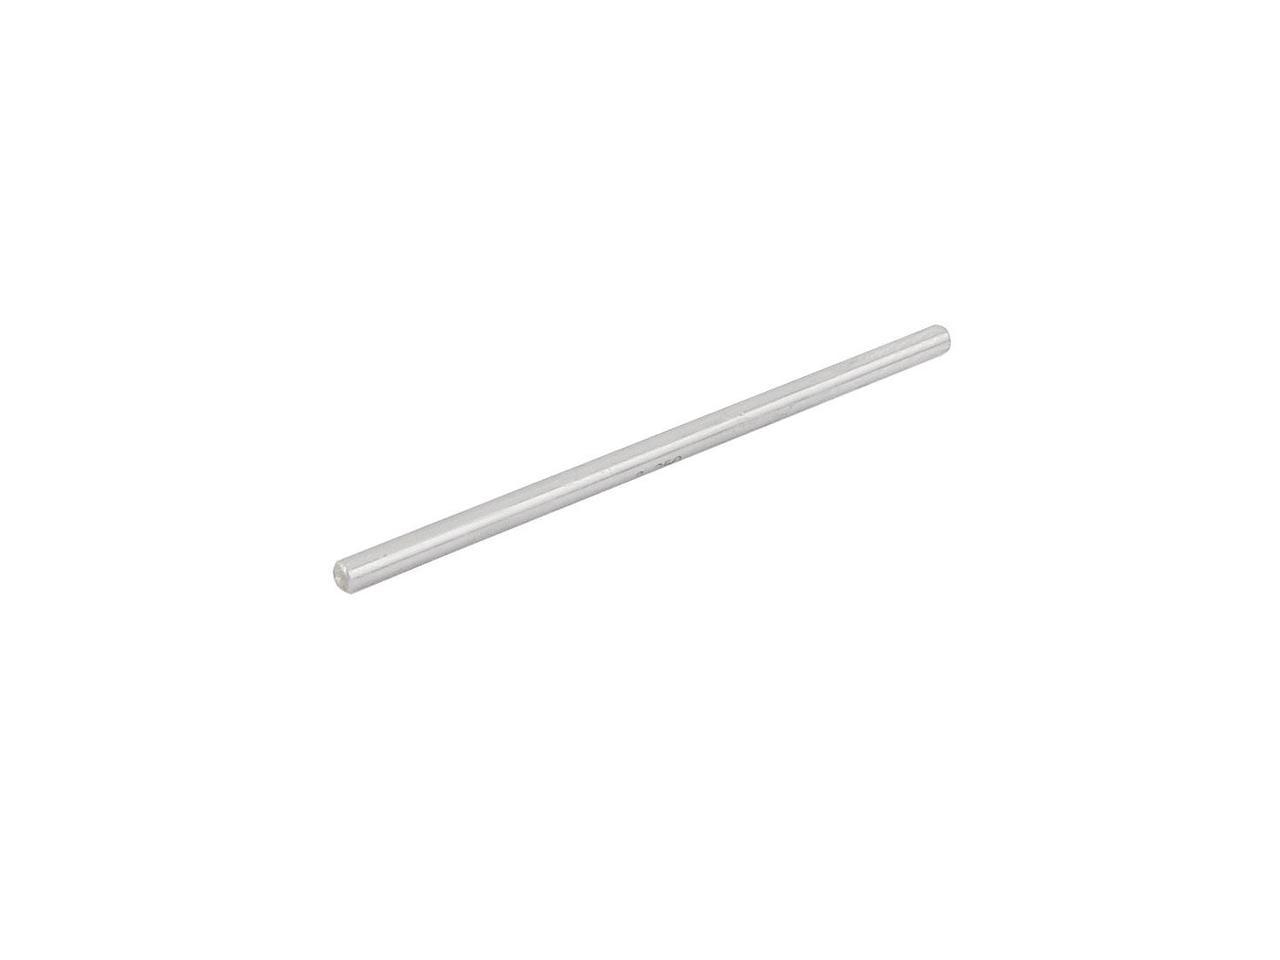 12.10mm Diameter Tungsten Carbide Pin Gage Gauge w Plastic Case 